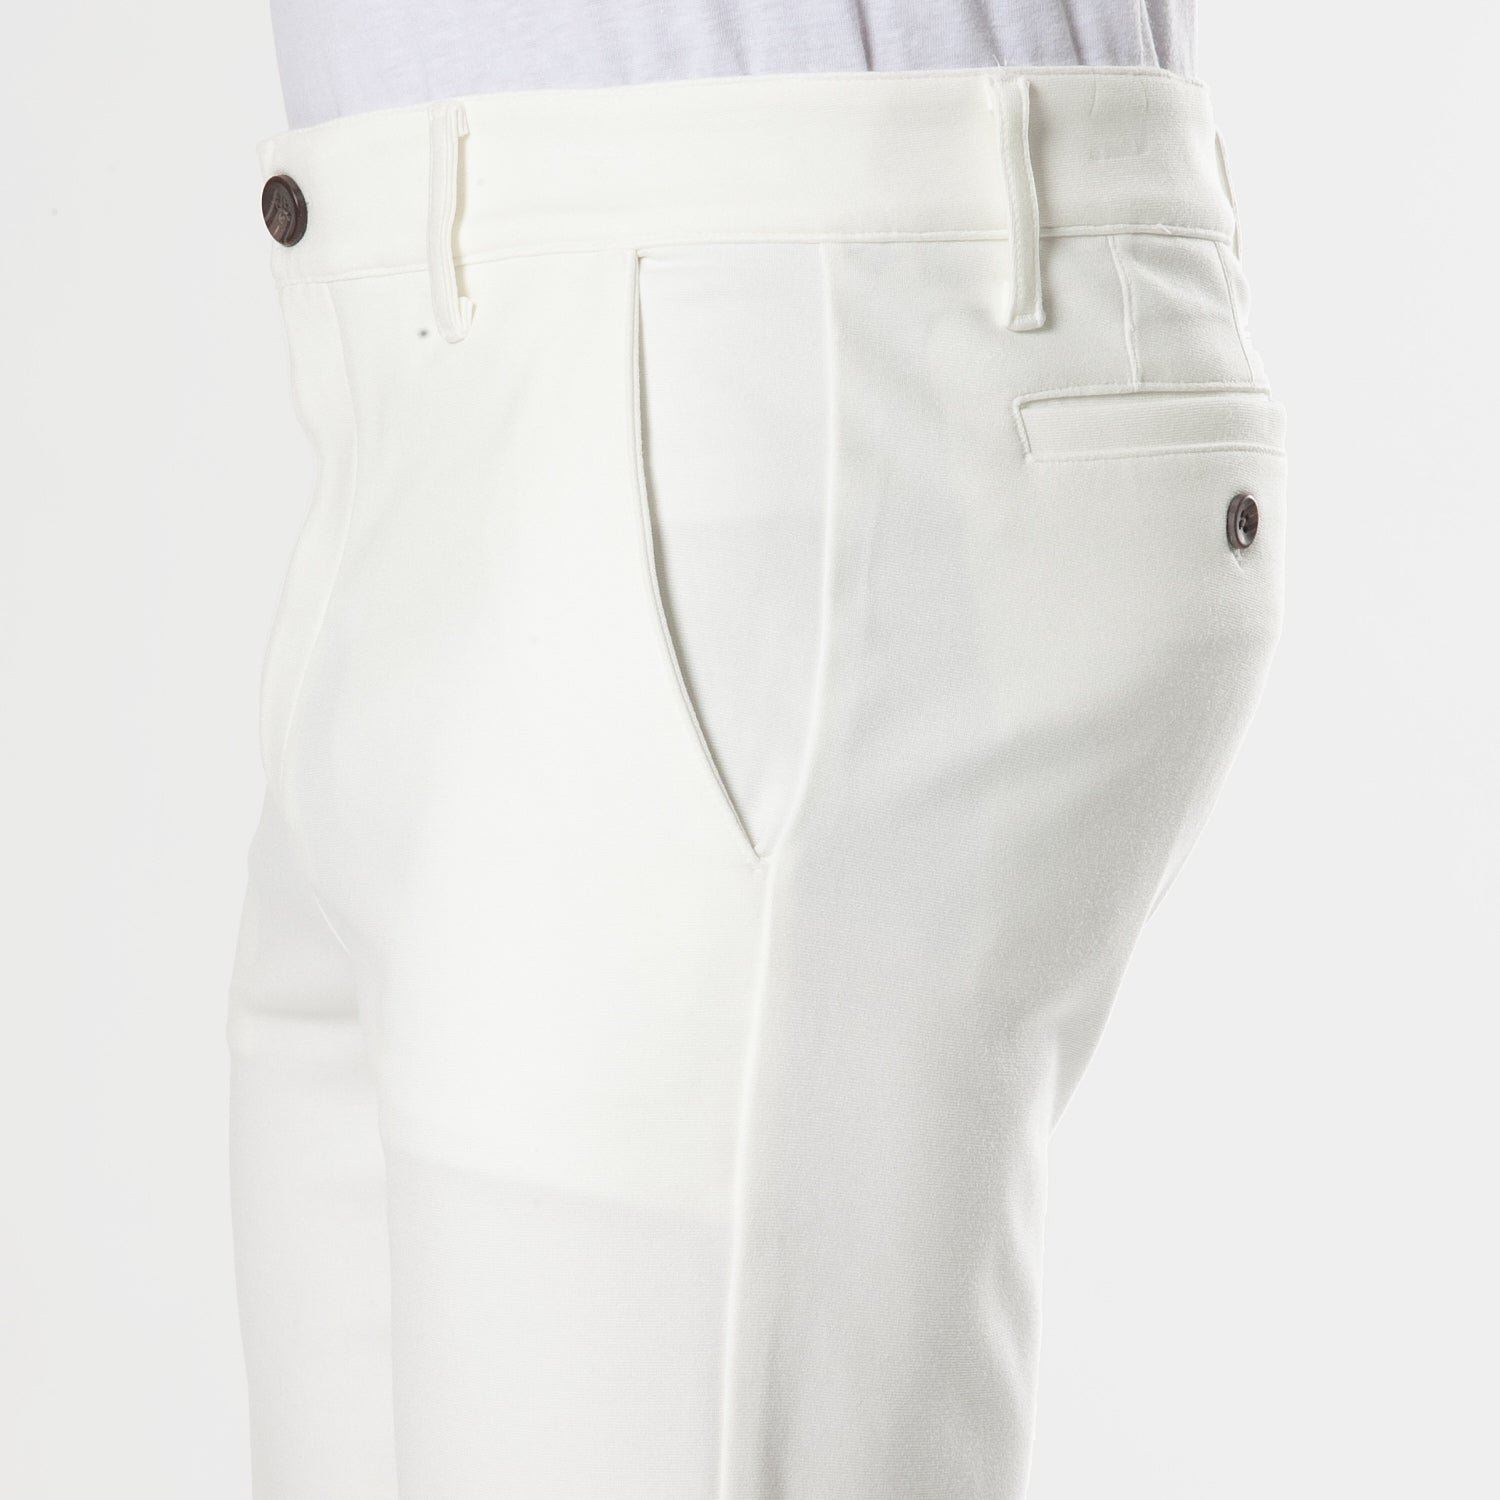 9.5" Ivory Comfort Chino Shorts